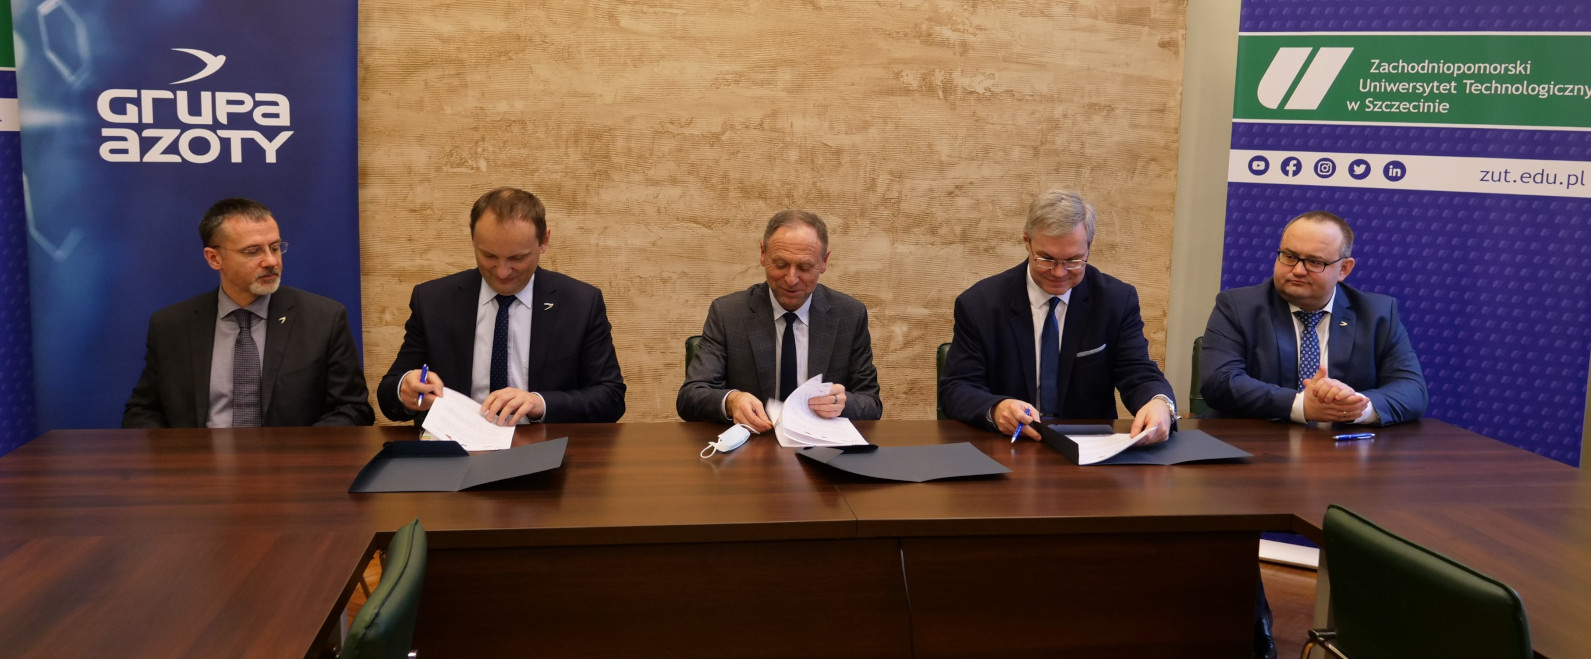 Kolejne porozumienie spółek Grupy Azoty z Zachodniopomorskim Uniwersytetem Technologicznym w Szczecinie